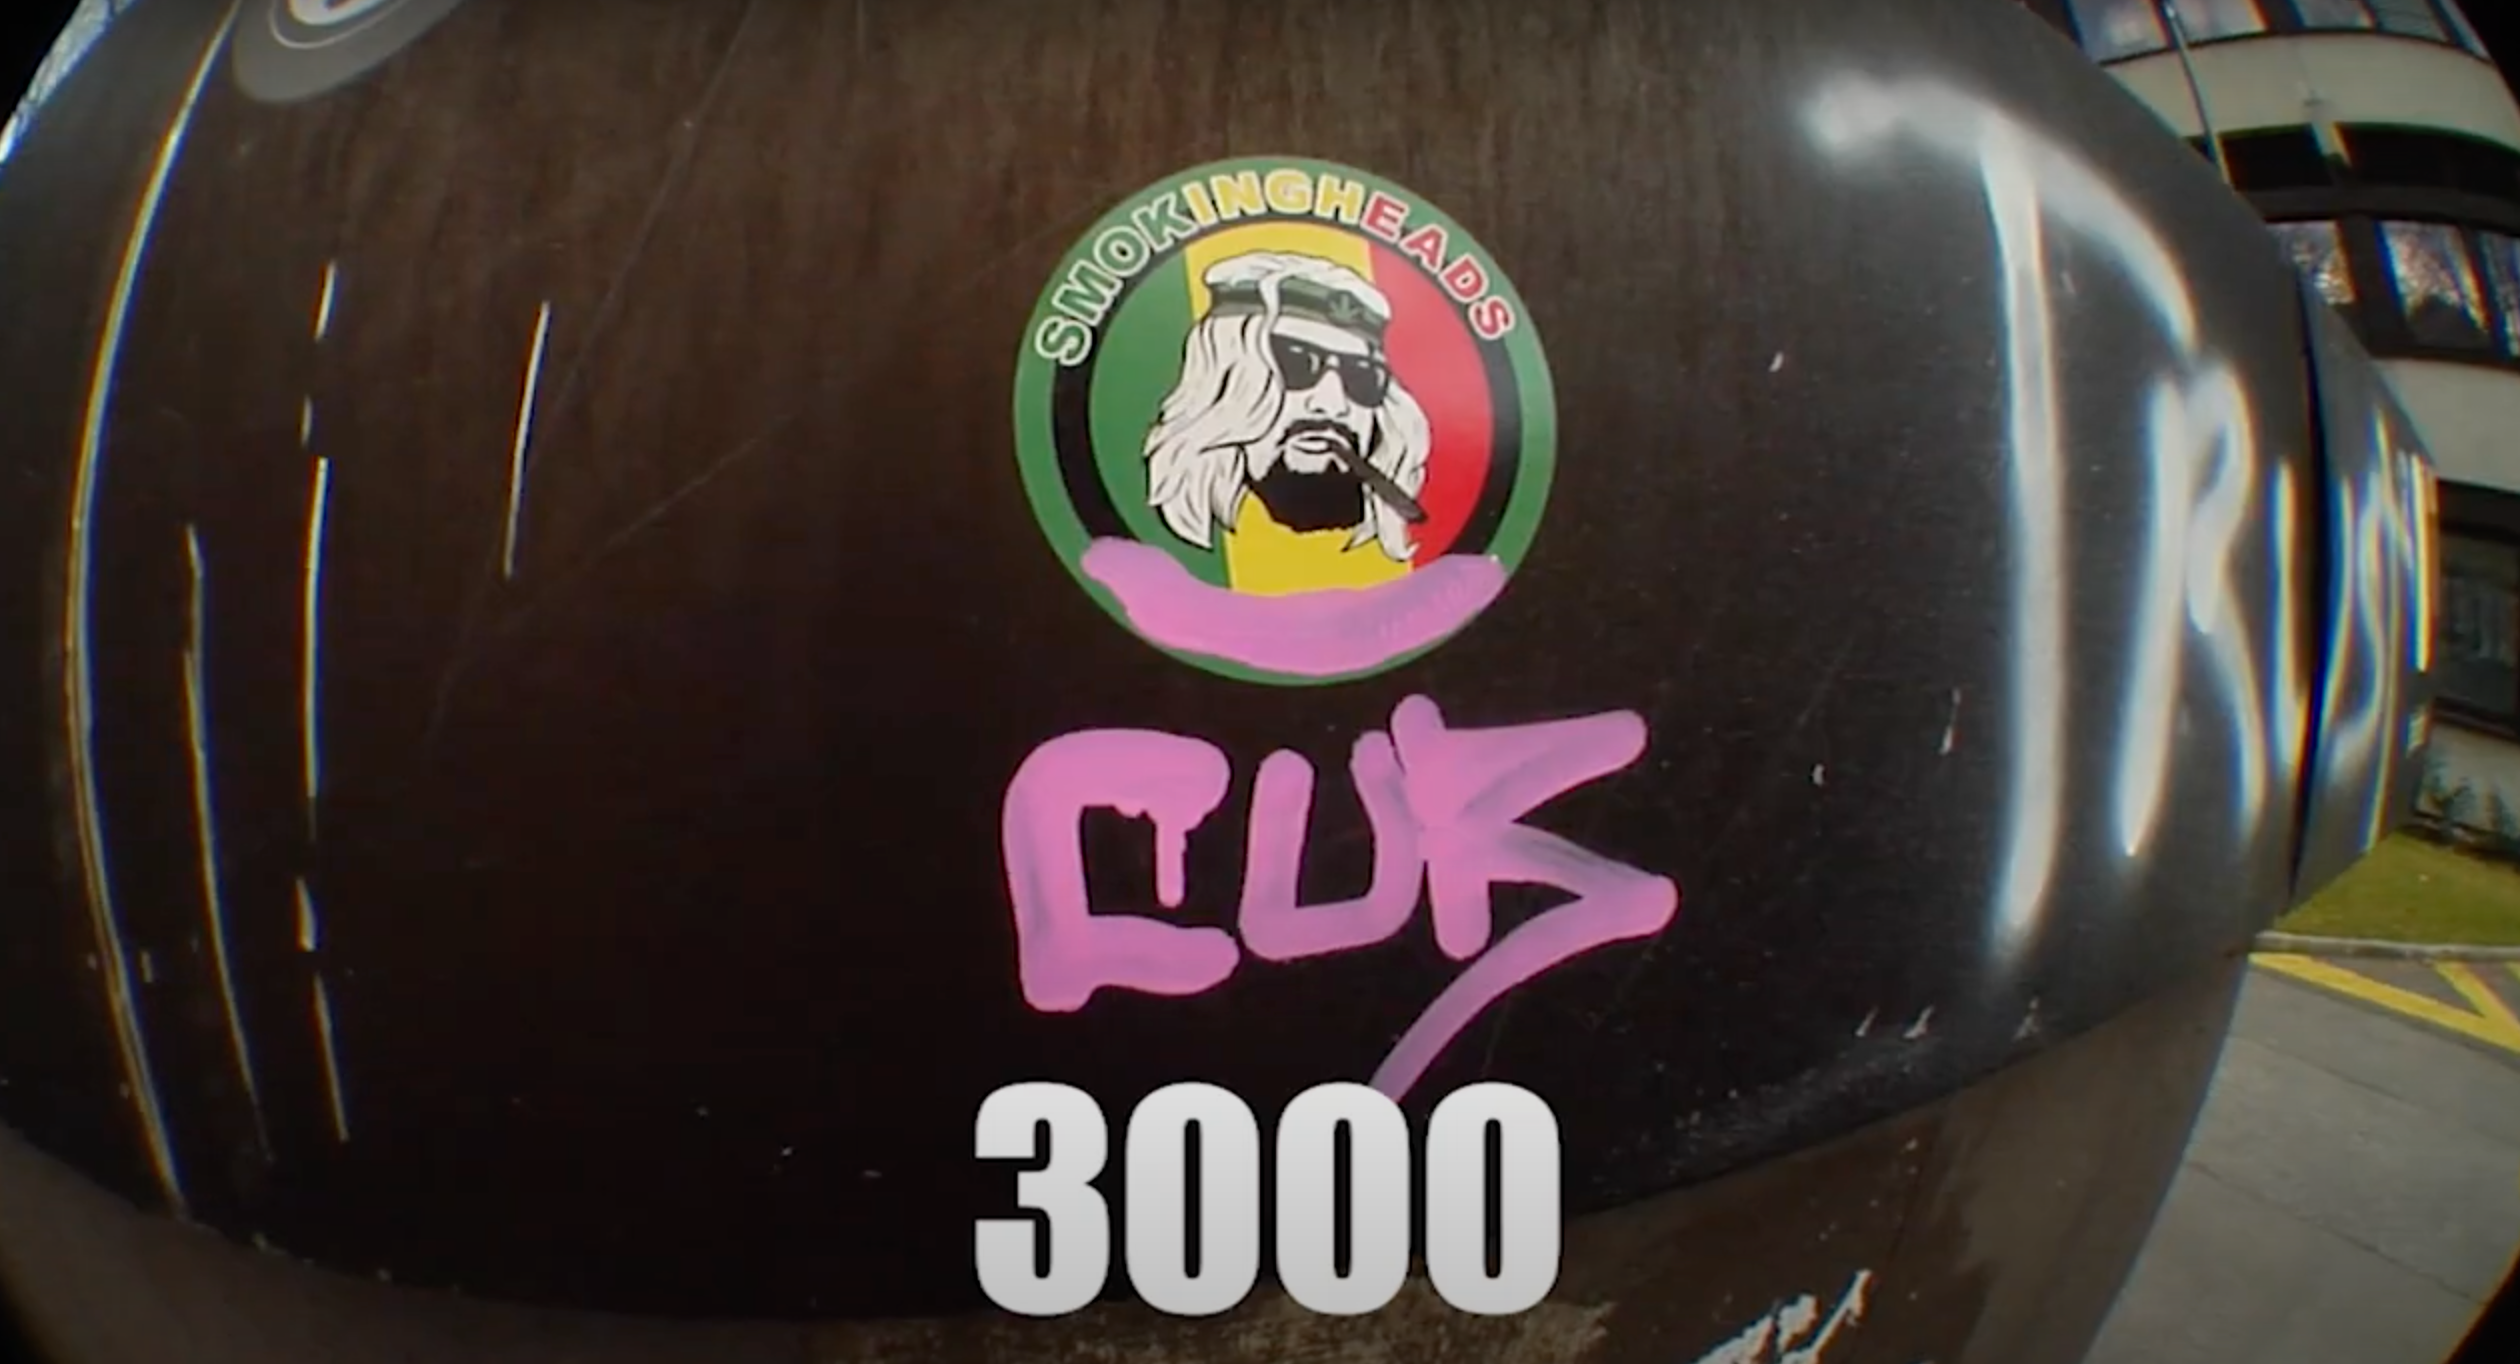 'CUB 3000'